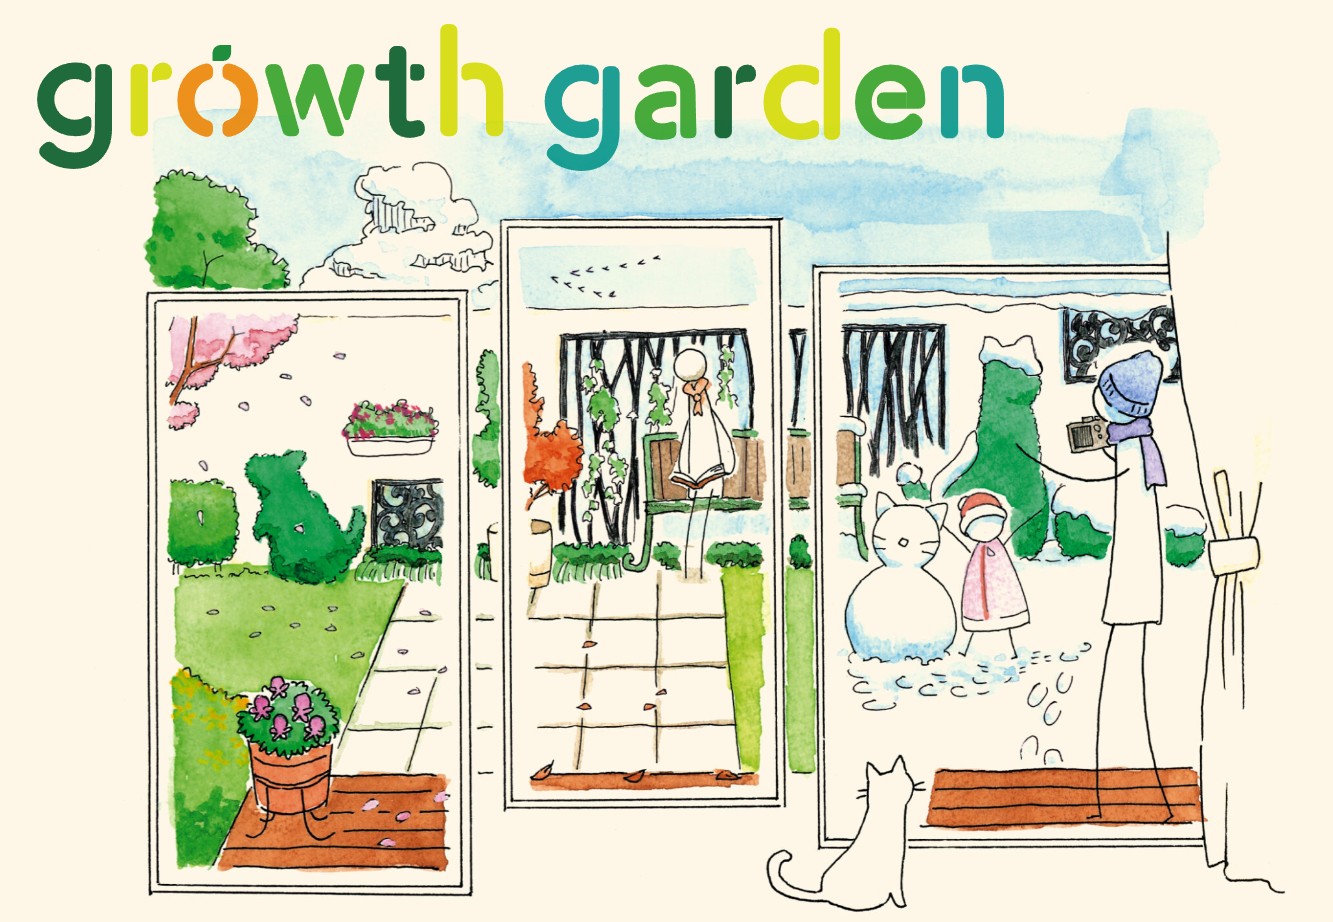 growth gardenの新しいWEBページが公開されました！